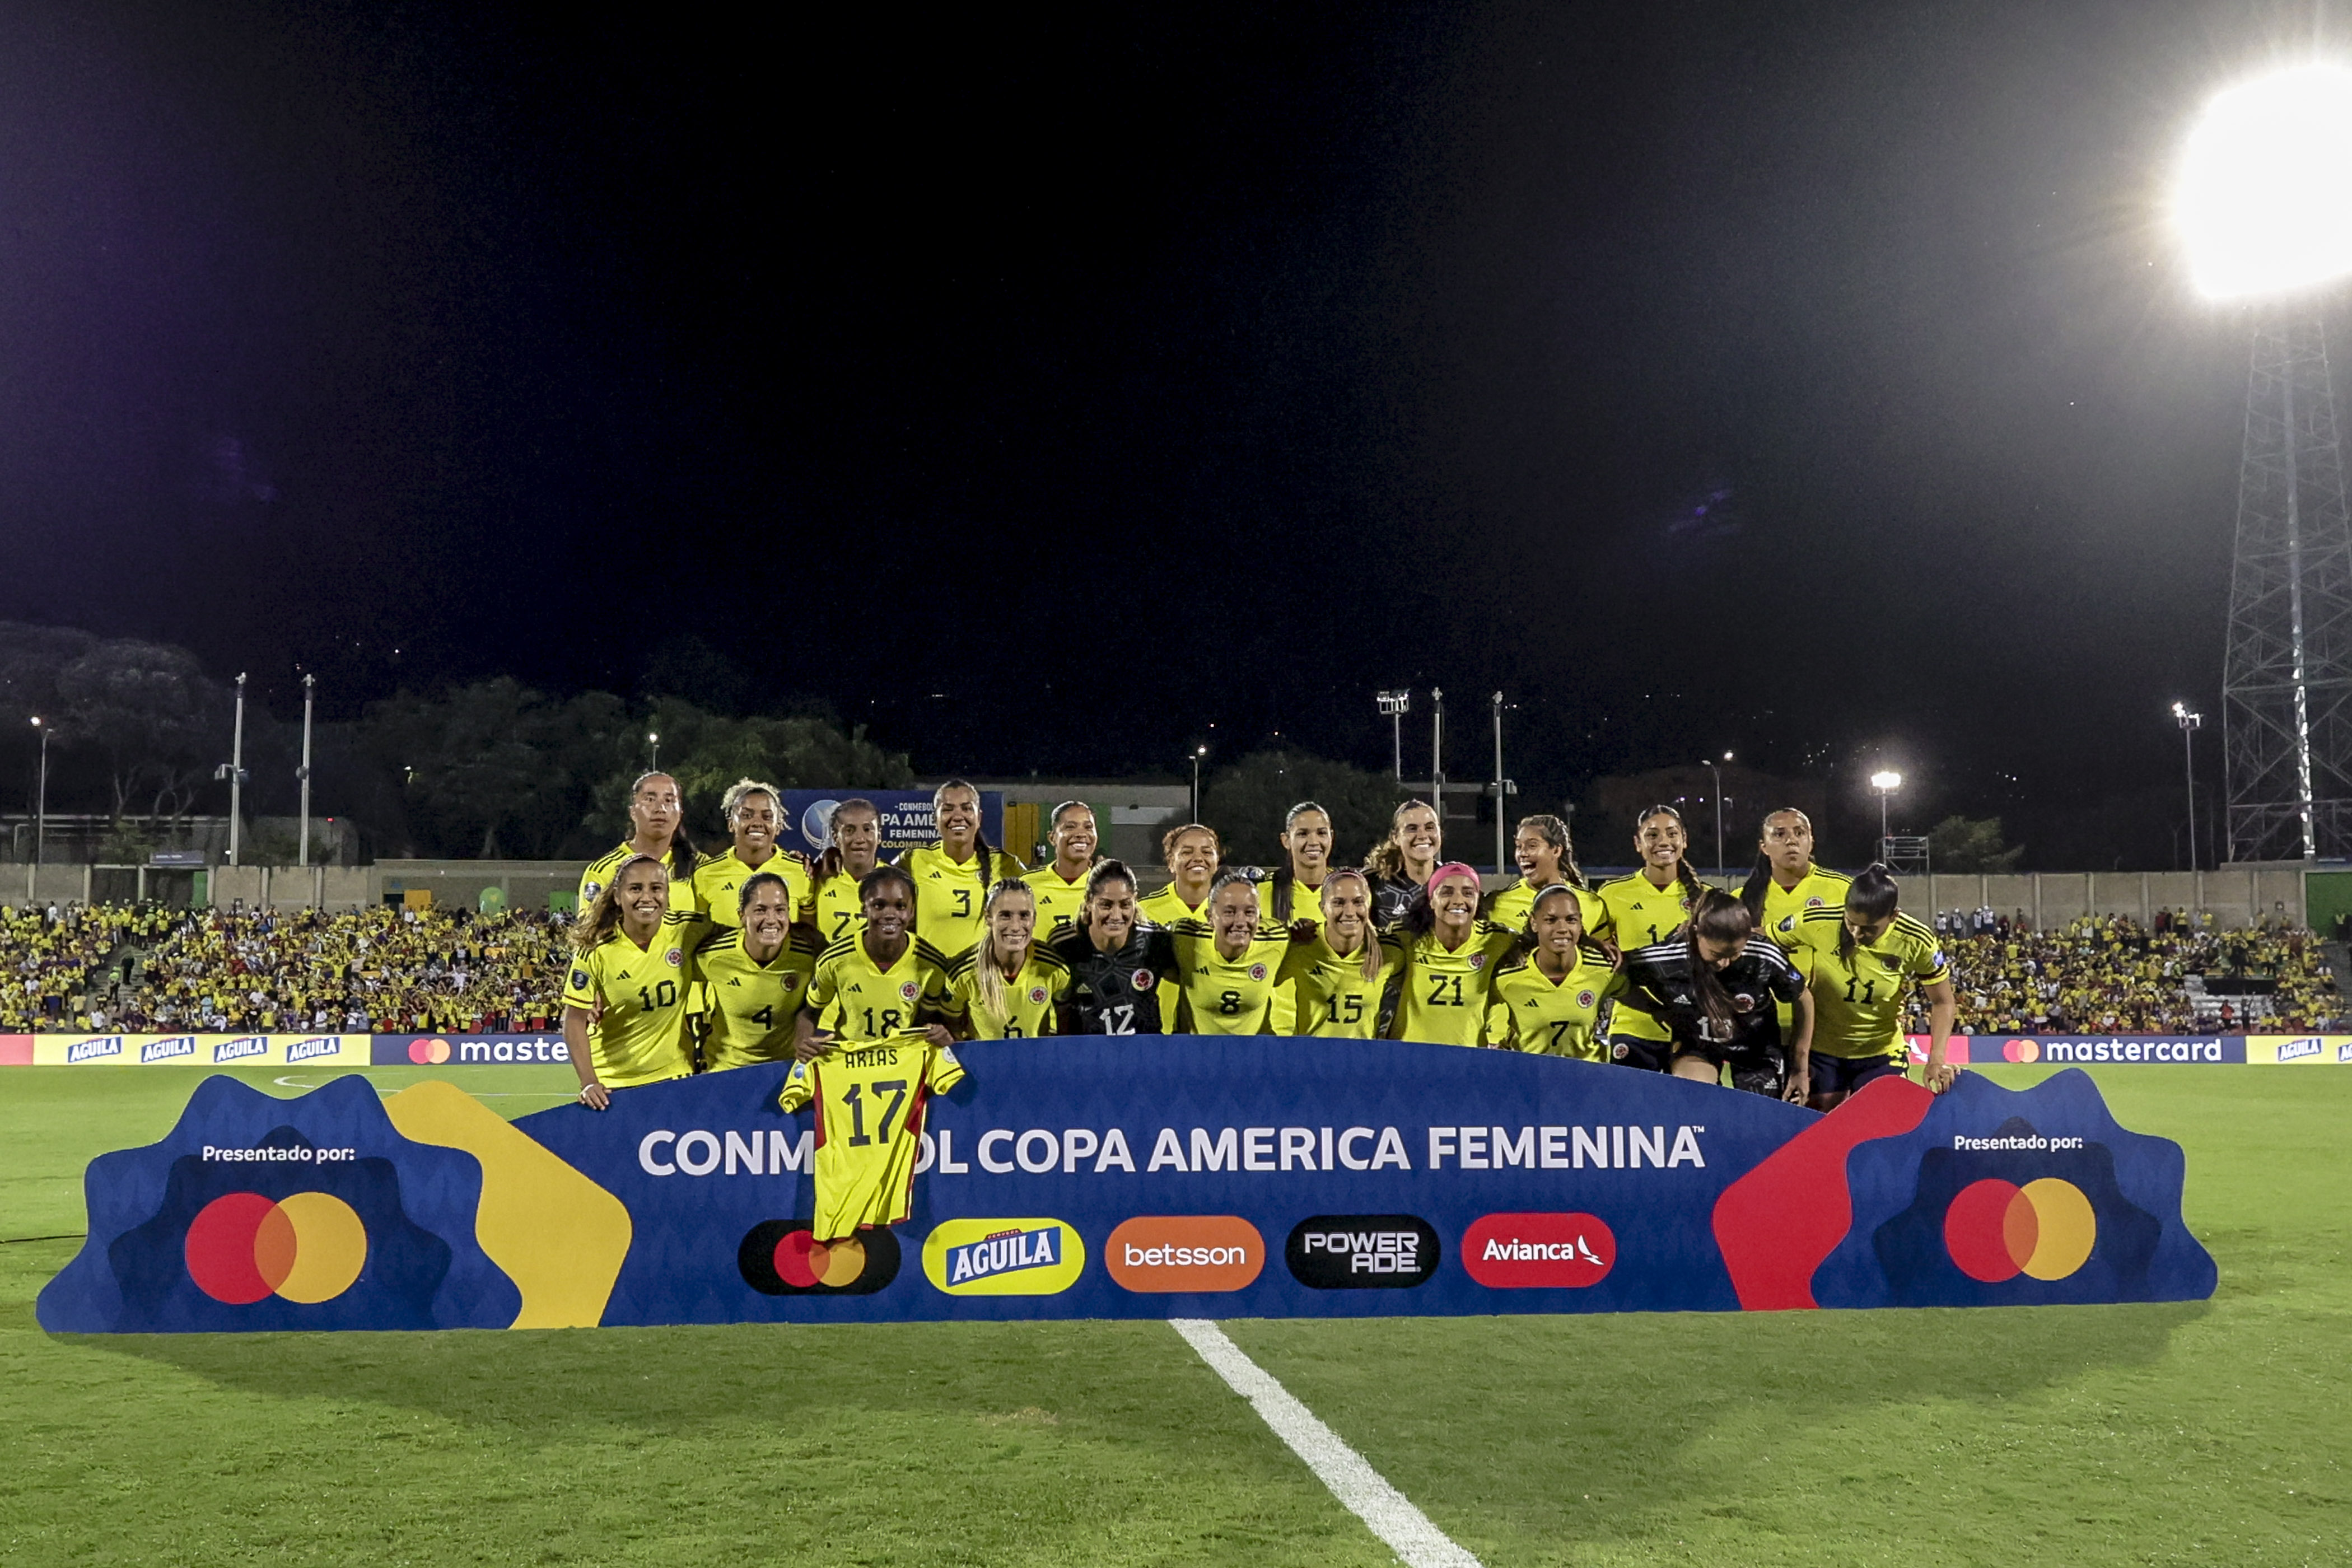 Esta es la nueva posición de Colombia en el ranking FIFA tras el subtítulo en Copa América Femenina